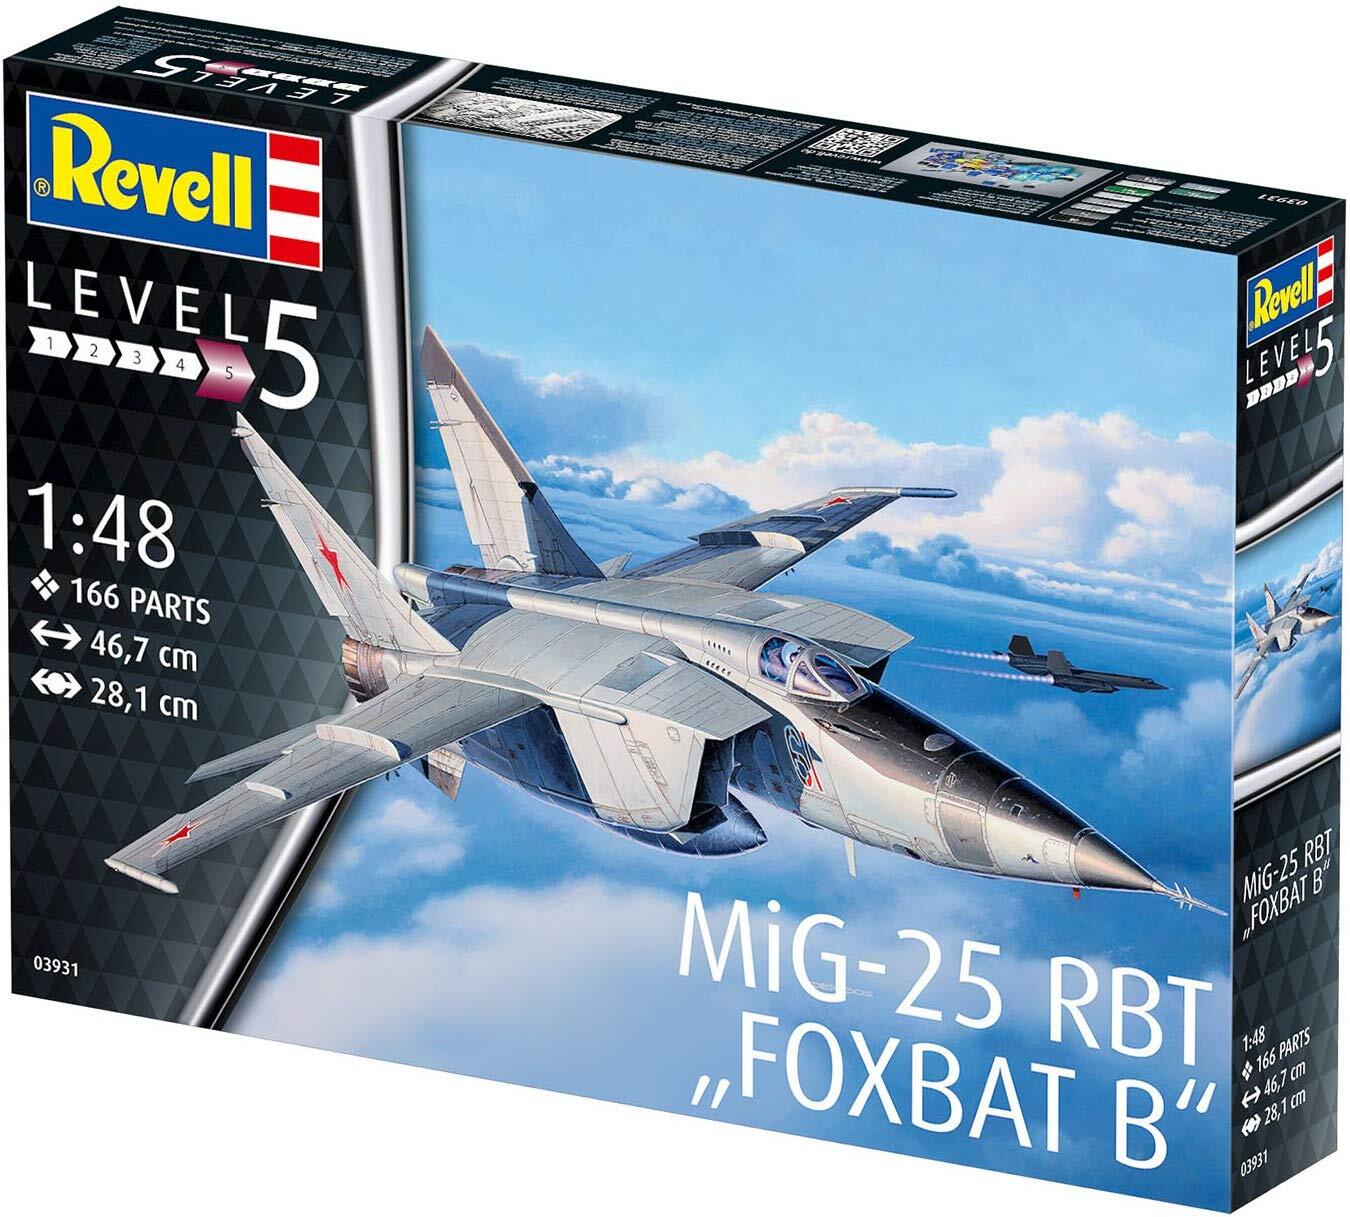 Revell 03931 - Modellbausatz, MiG-25 RBT, Foxbat B